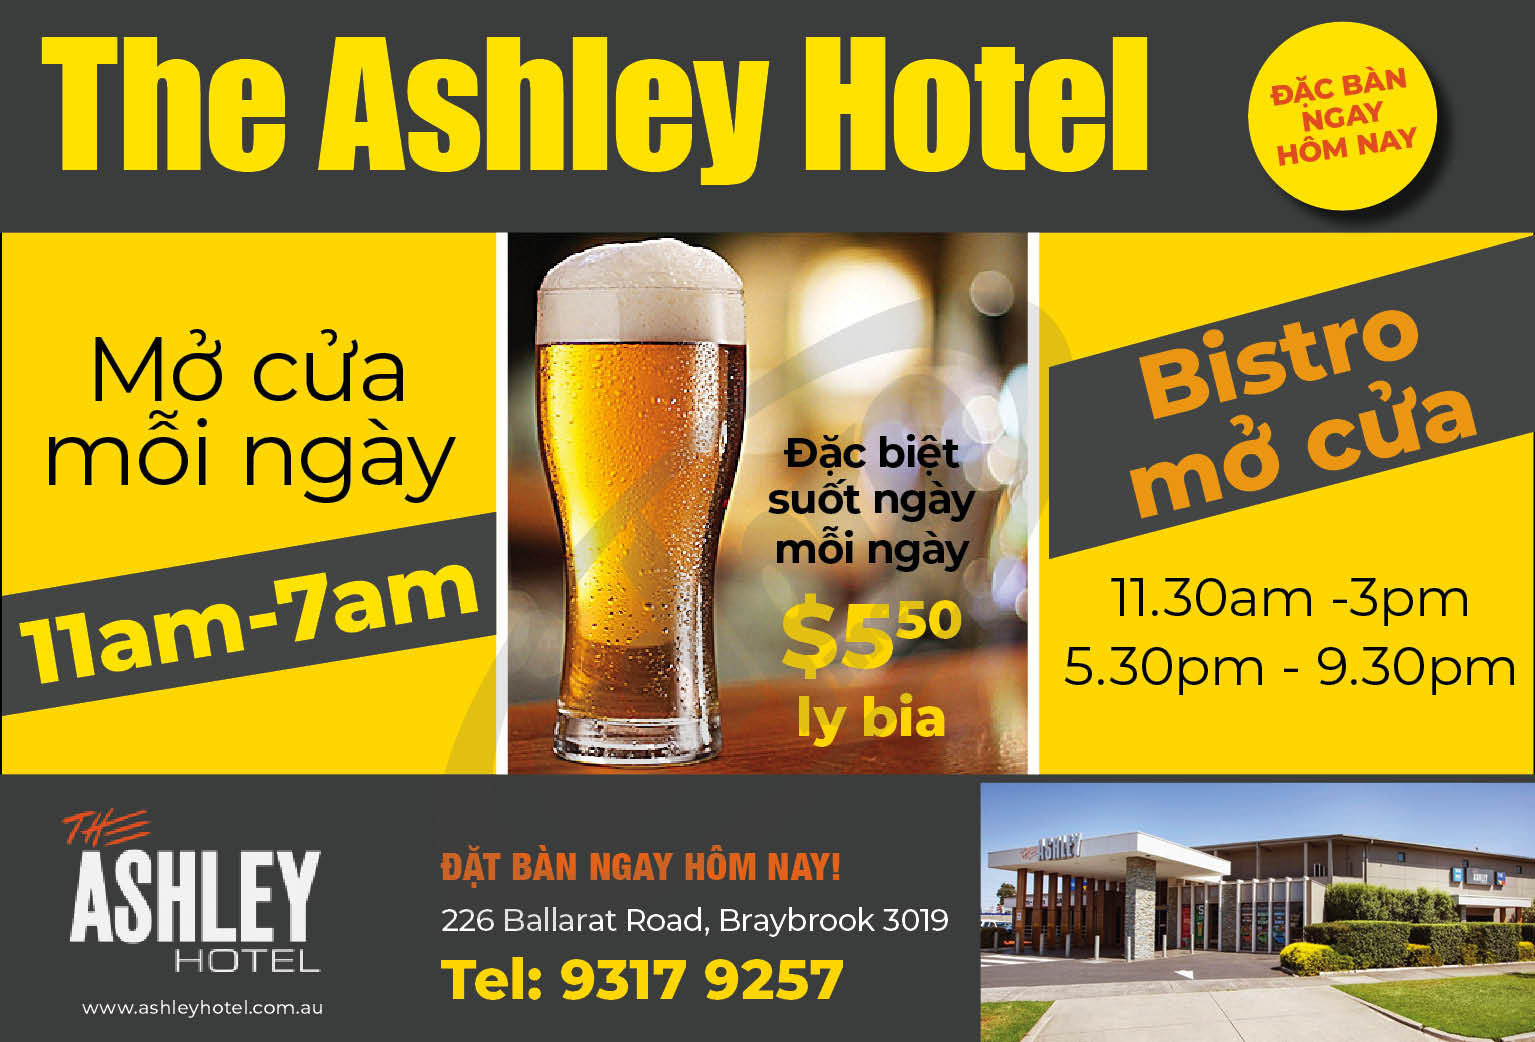 The Ashley Hotel